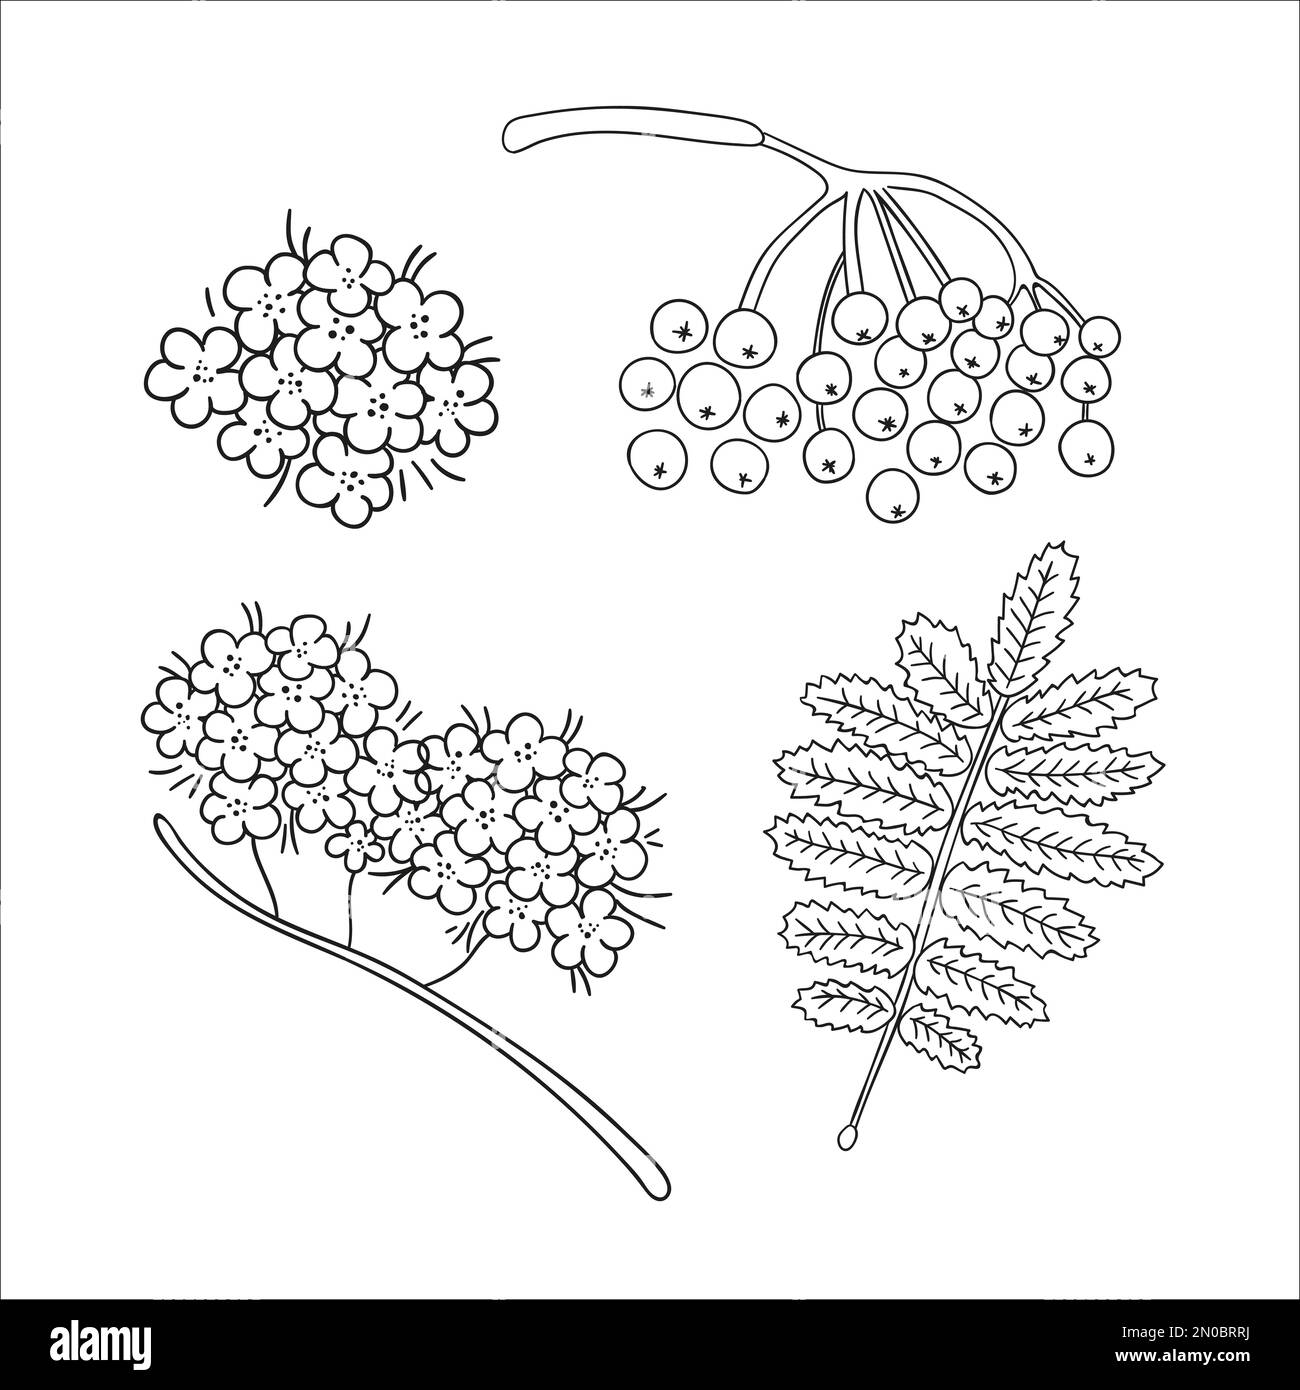 Vektorset von Linienelementen im Strukturbaum, isoliert auf weißem Hintergrund. Botanische Darstellung von Rowan-Beere, Brunch, Blumen. Schwarz-weiß Clip Art. Stock Vektor